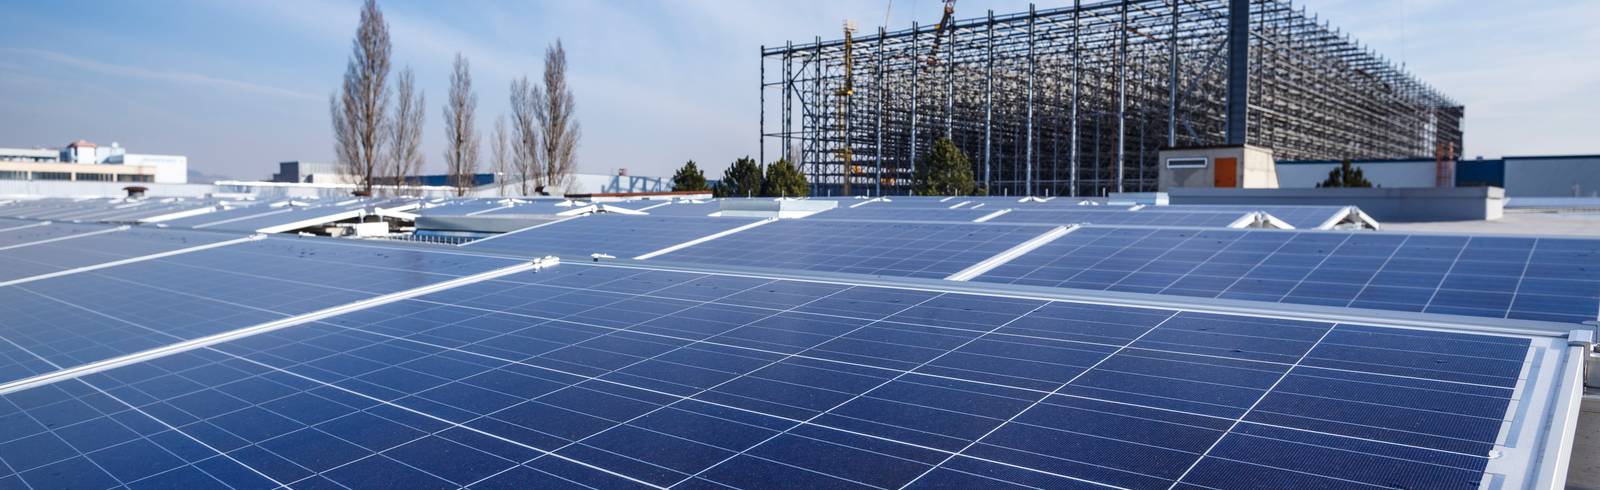 Wien Energie: Photovoltaik-Ausbau geht weiter